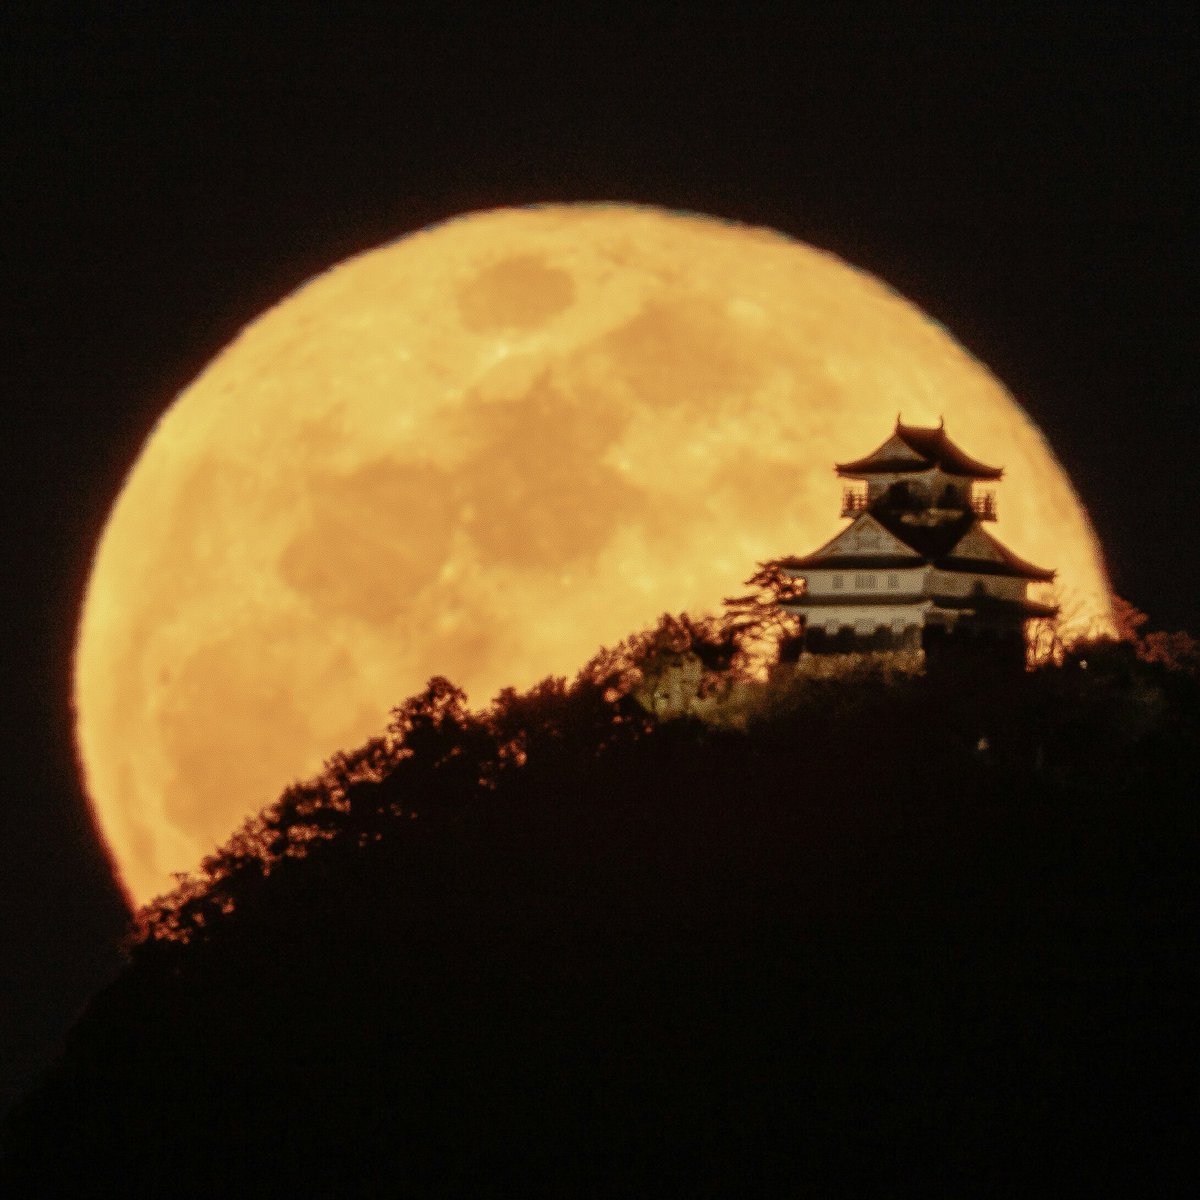 ぐっち Full Moon And Gifu Castle 満月と岐阜城 先日の満月と岐阜城 月が昇る時間帯が岐阜城 のライトアップより遅くなったので しばらく月城はお預け また満月が待ち遠しいです 岐阜城 月城 月 満月 岐阜 キヤノン シグマ 岐阜の魅力を